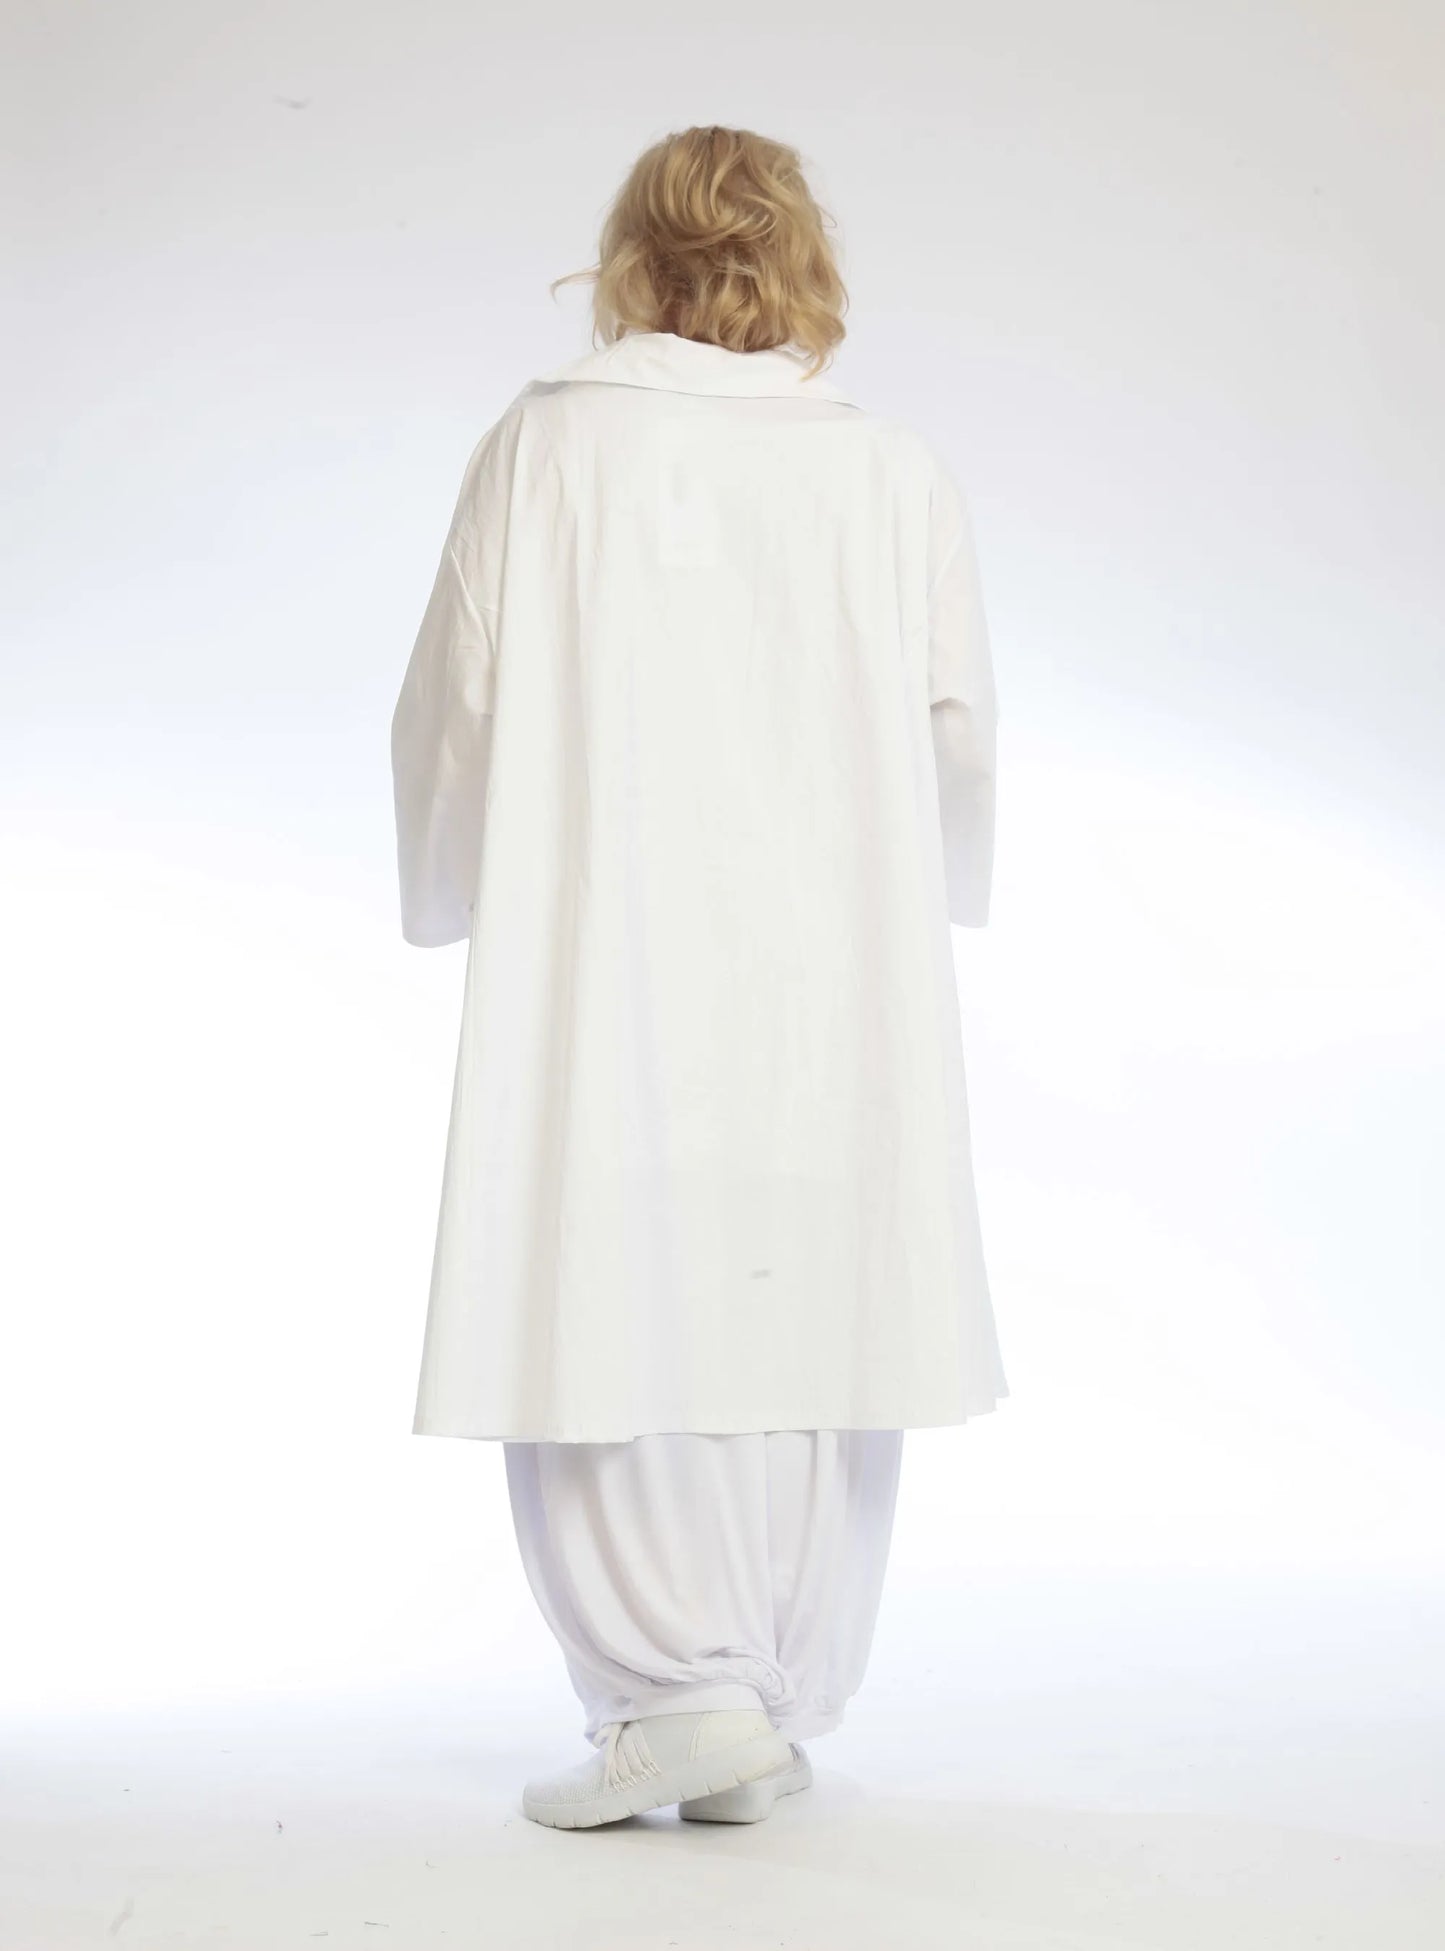 Sommer Bluse in A-Form aus luftiger Popeline Qualität, Hazel in Weiß